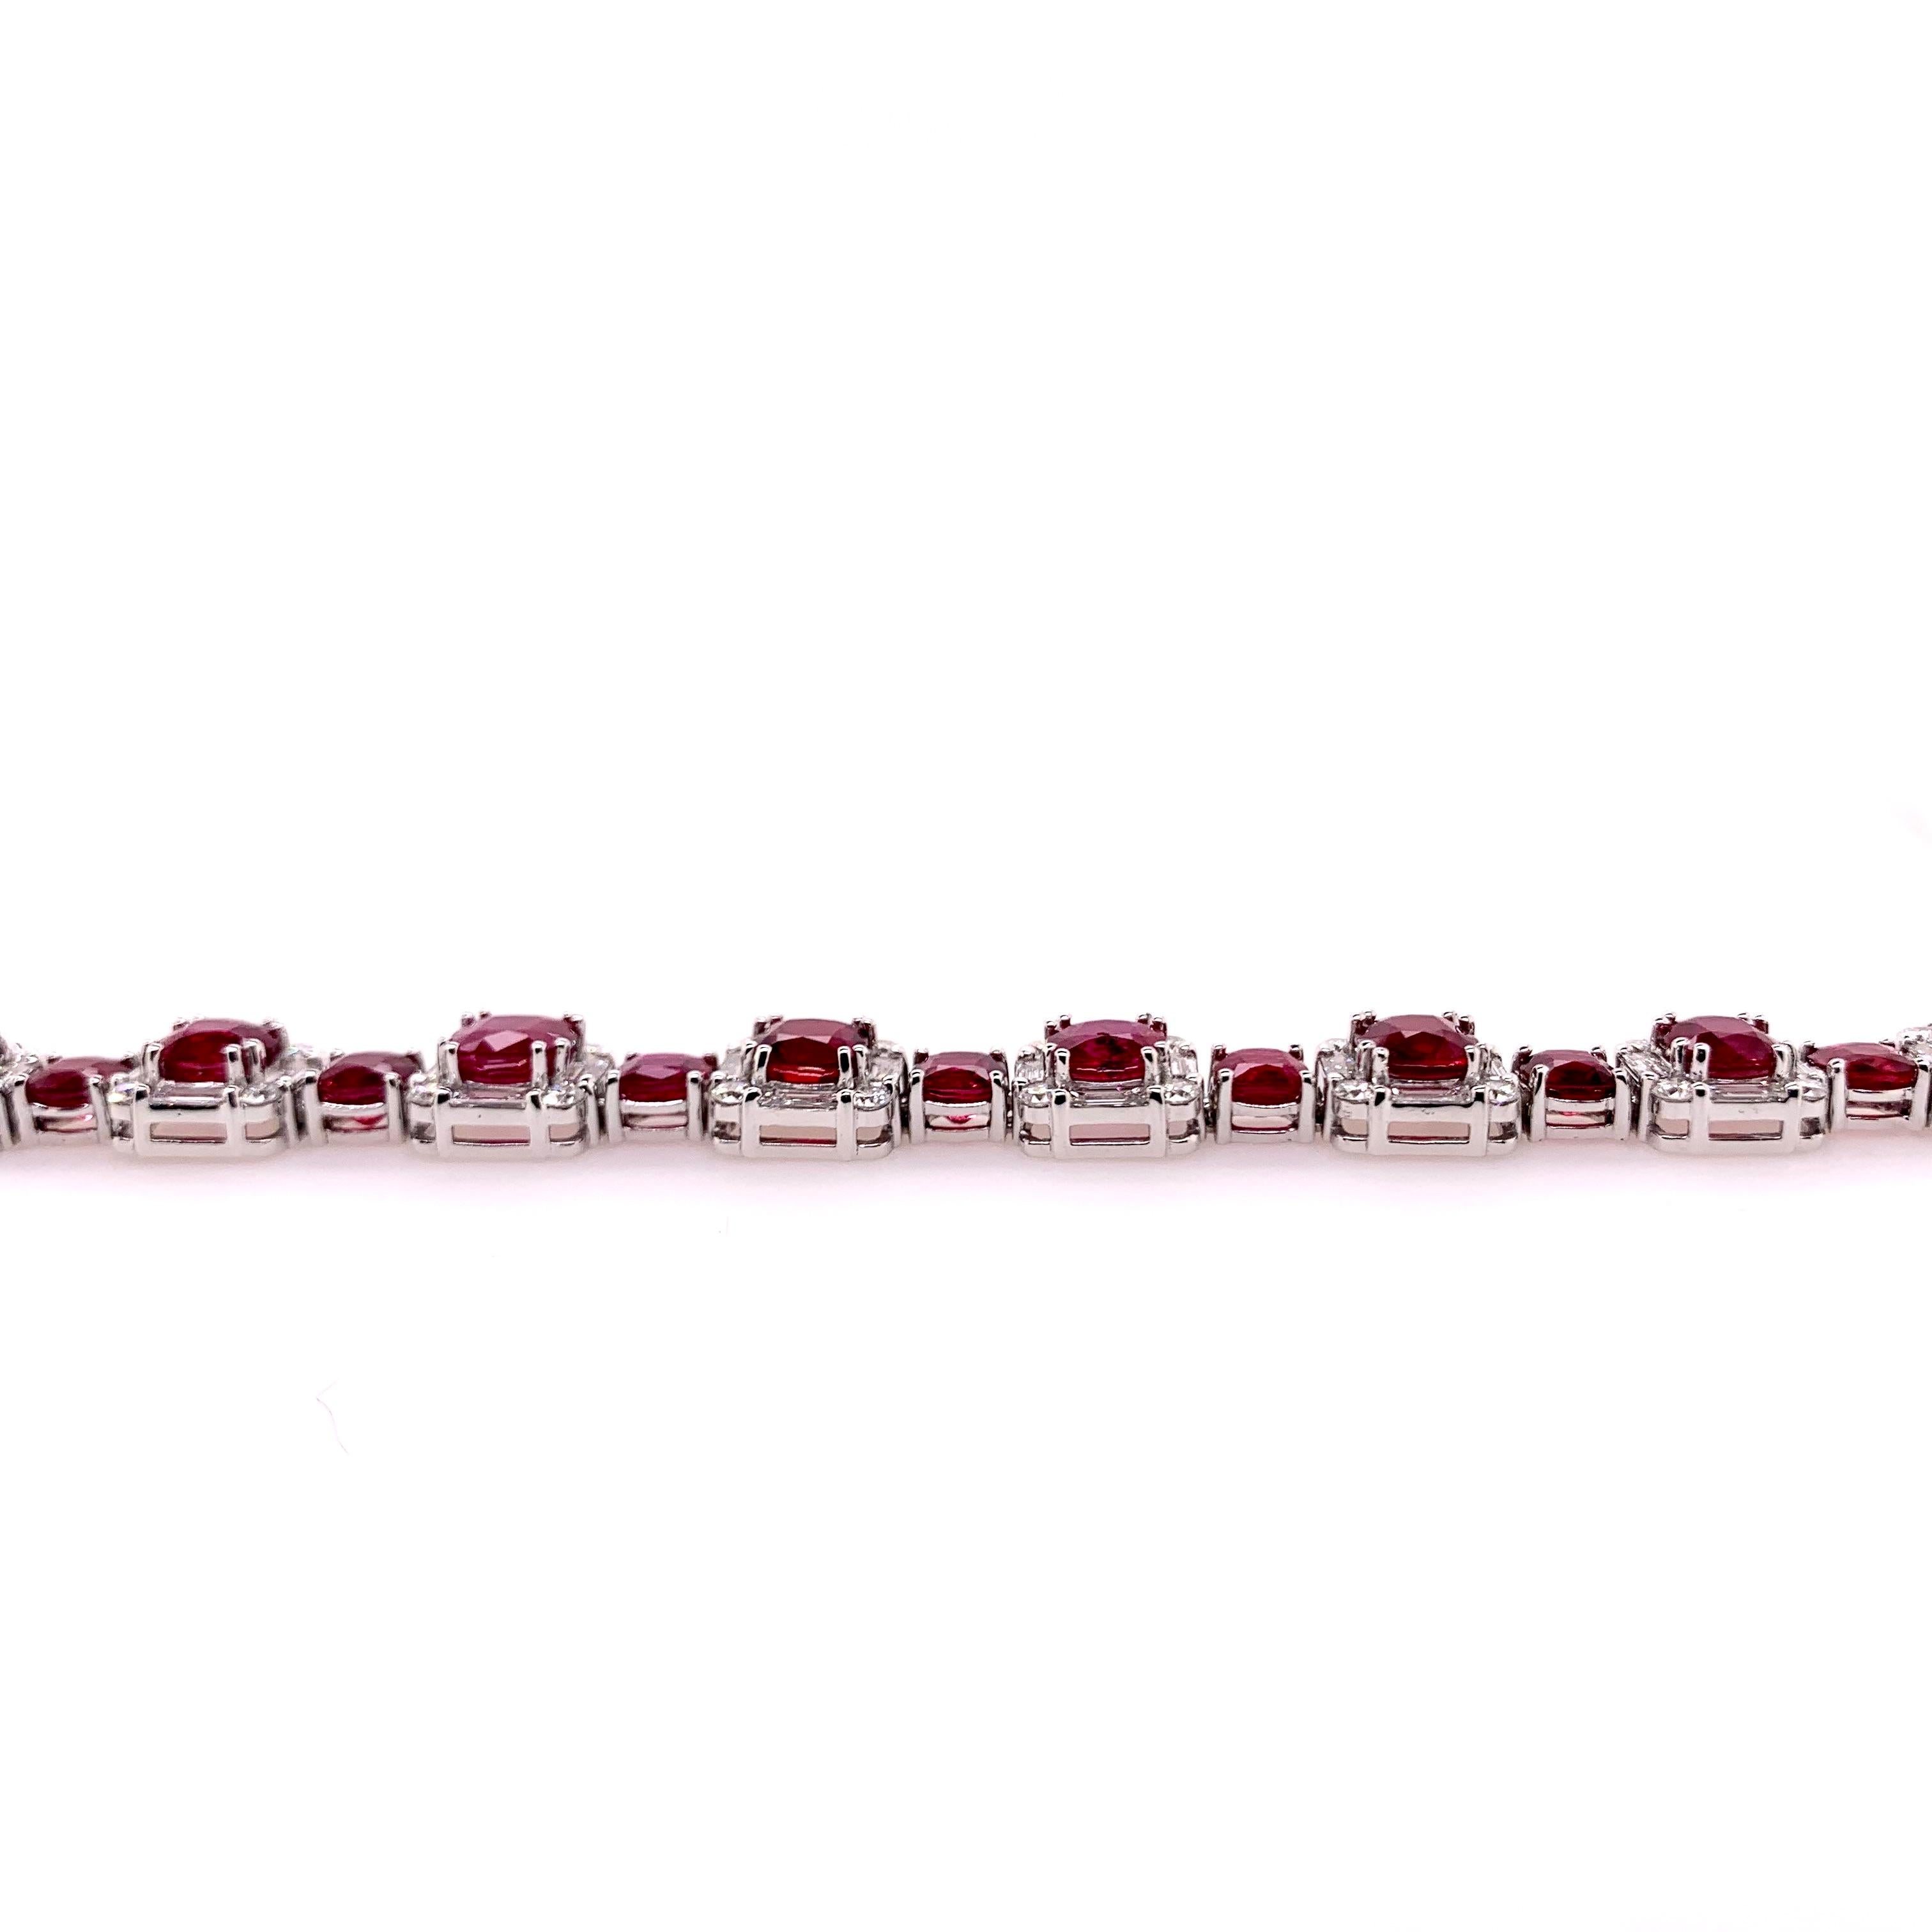 Ce bracelet serti à la main en platine met en valeur les rubis éclatants et présente une bordure de diamants baguette et ronds brillants sur les sections alternées.  Les rubis sont de première qualité, comme en témoigne la couleur rouge sang